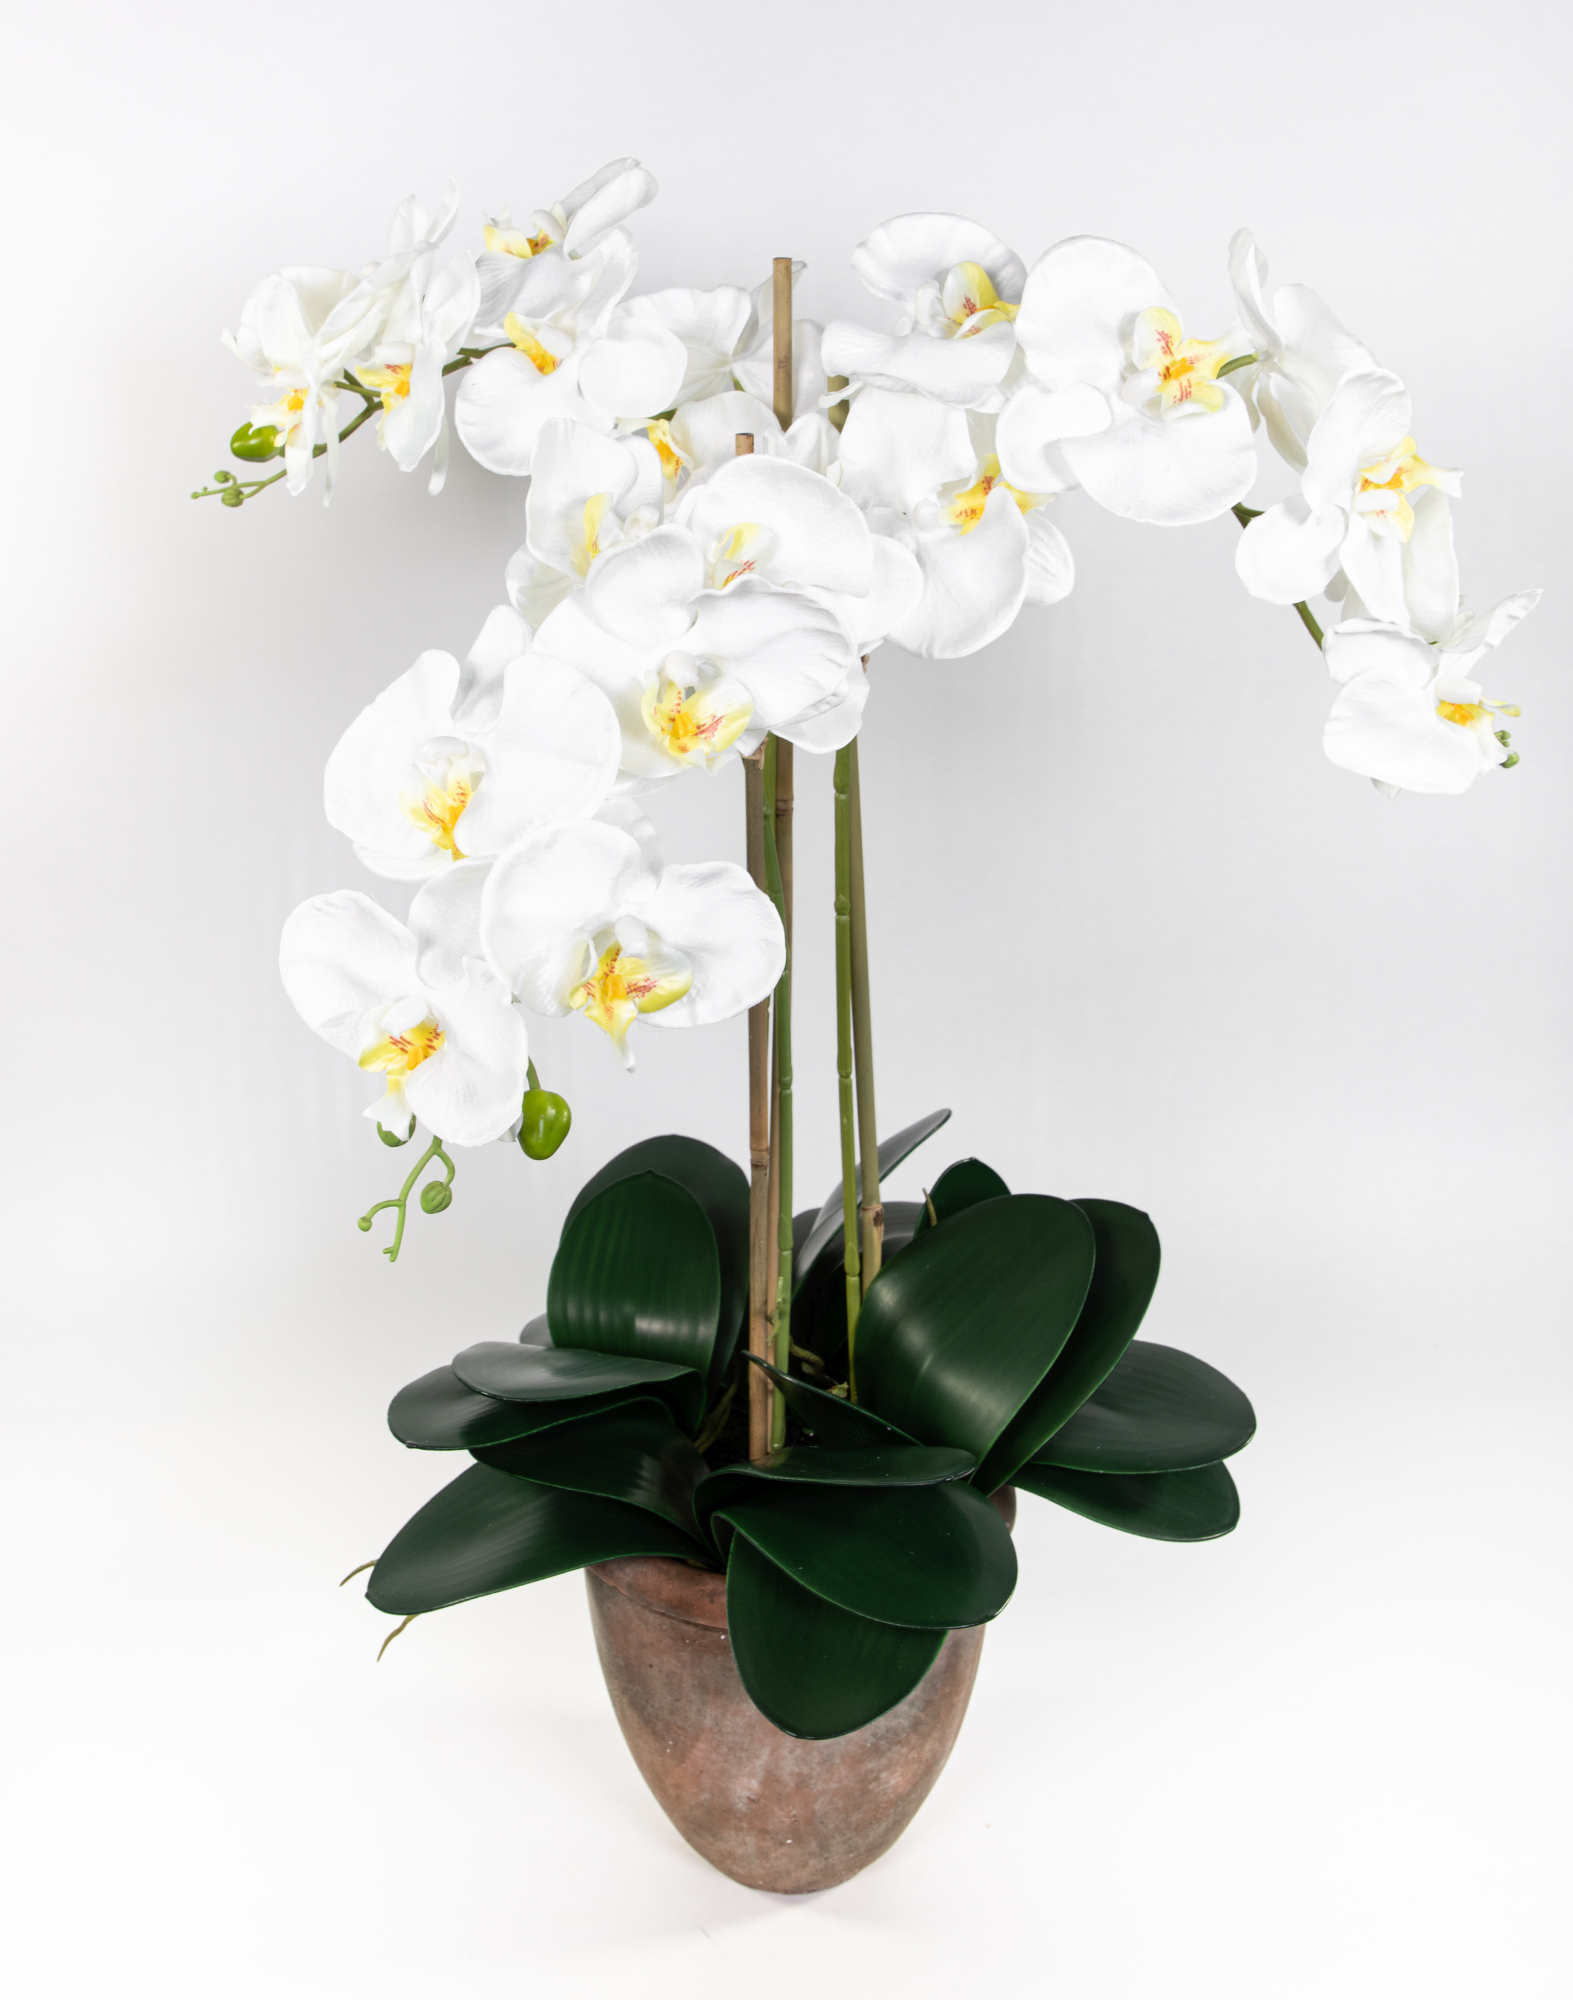 Orchidee 75x60cm im Blumen GA Phalaenopsis weiß Terracottatopf Kunstblumen künstliche